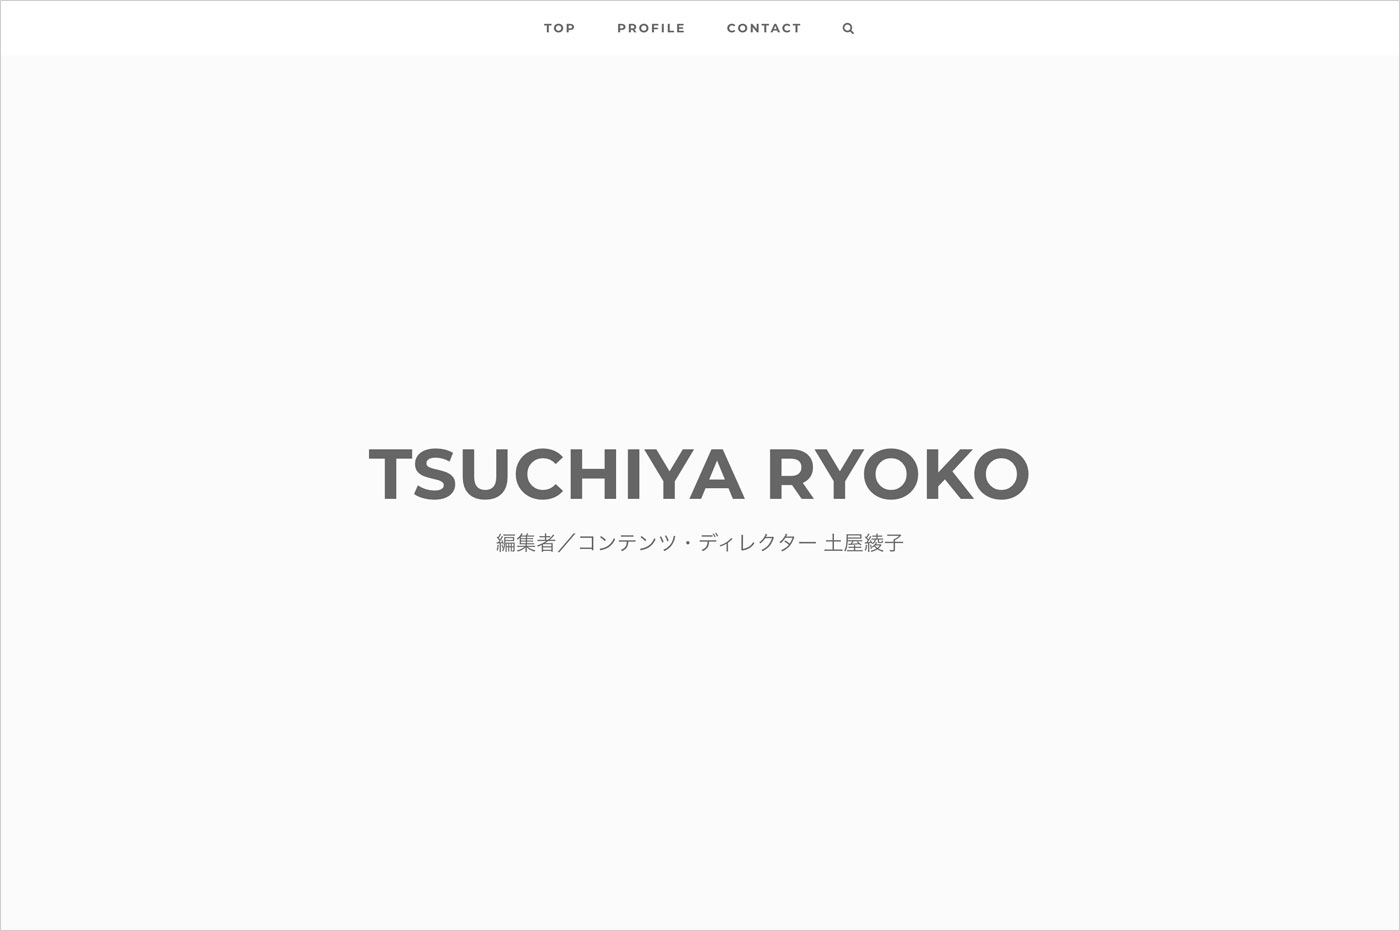 TSUCHIYA Ryokoウェブサイトの画面キャプチャ画像